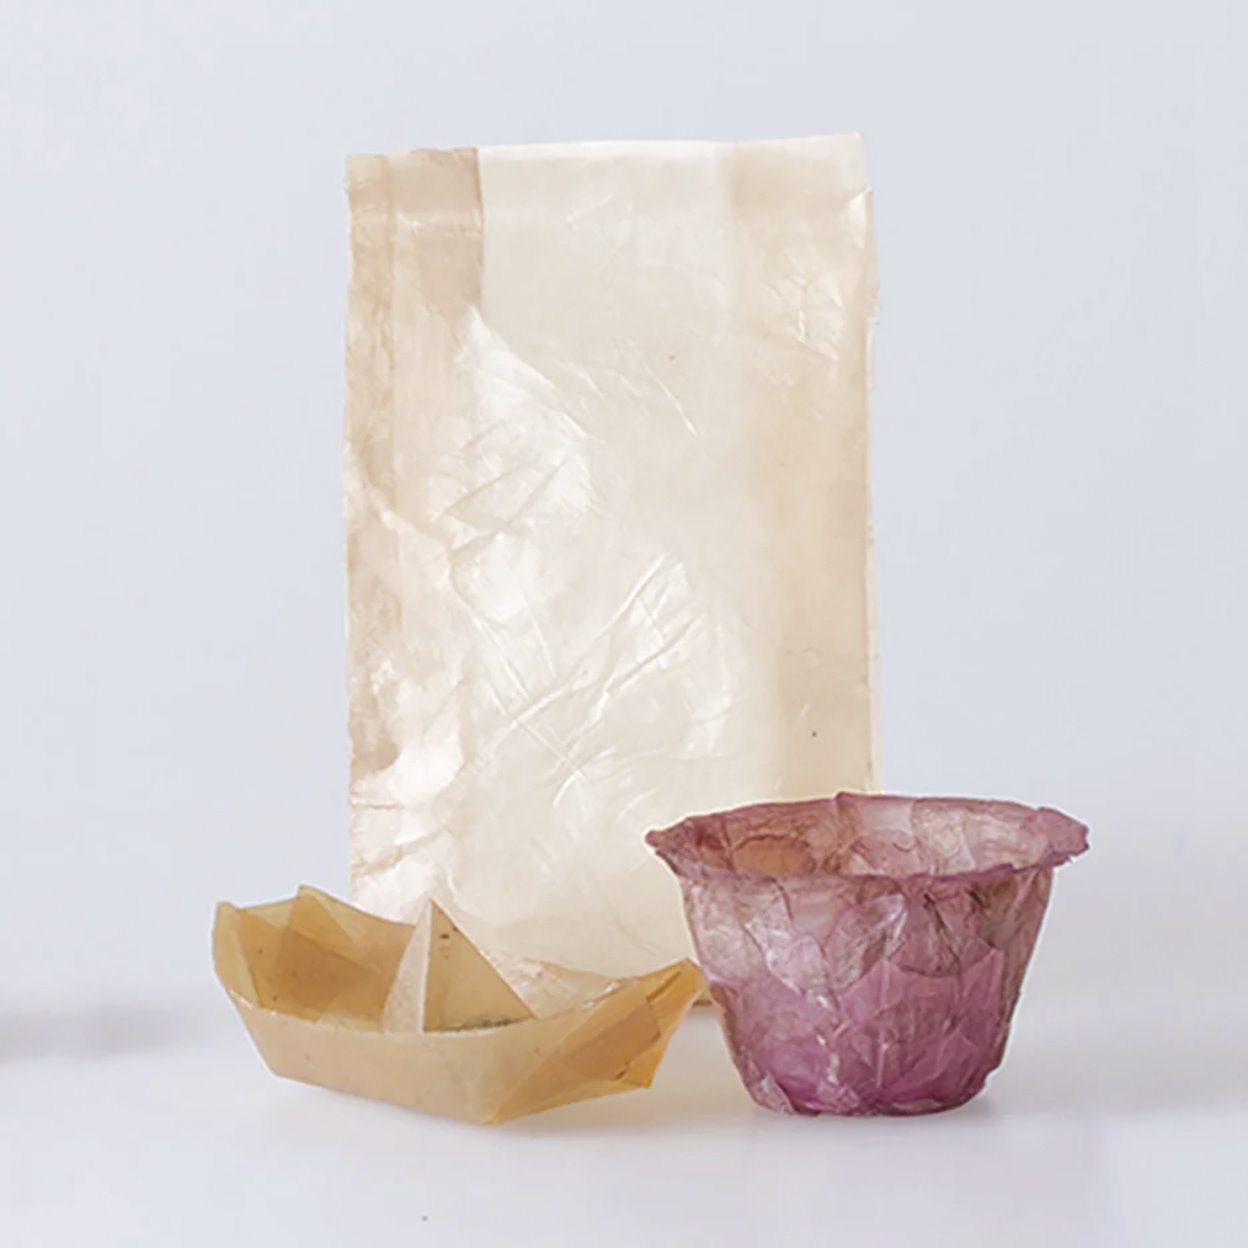 packaging y envoltorios de bacterias y levadura exposición Vitra Museum